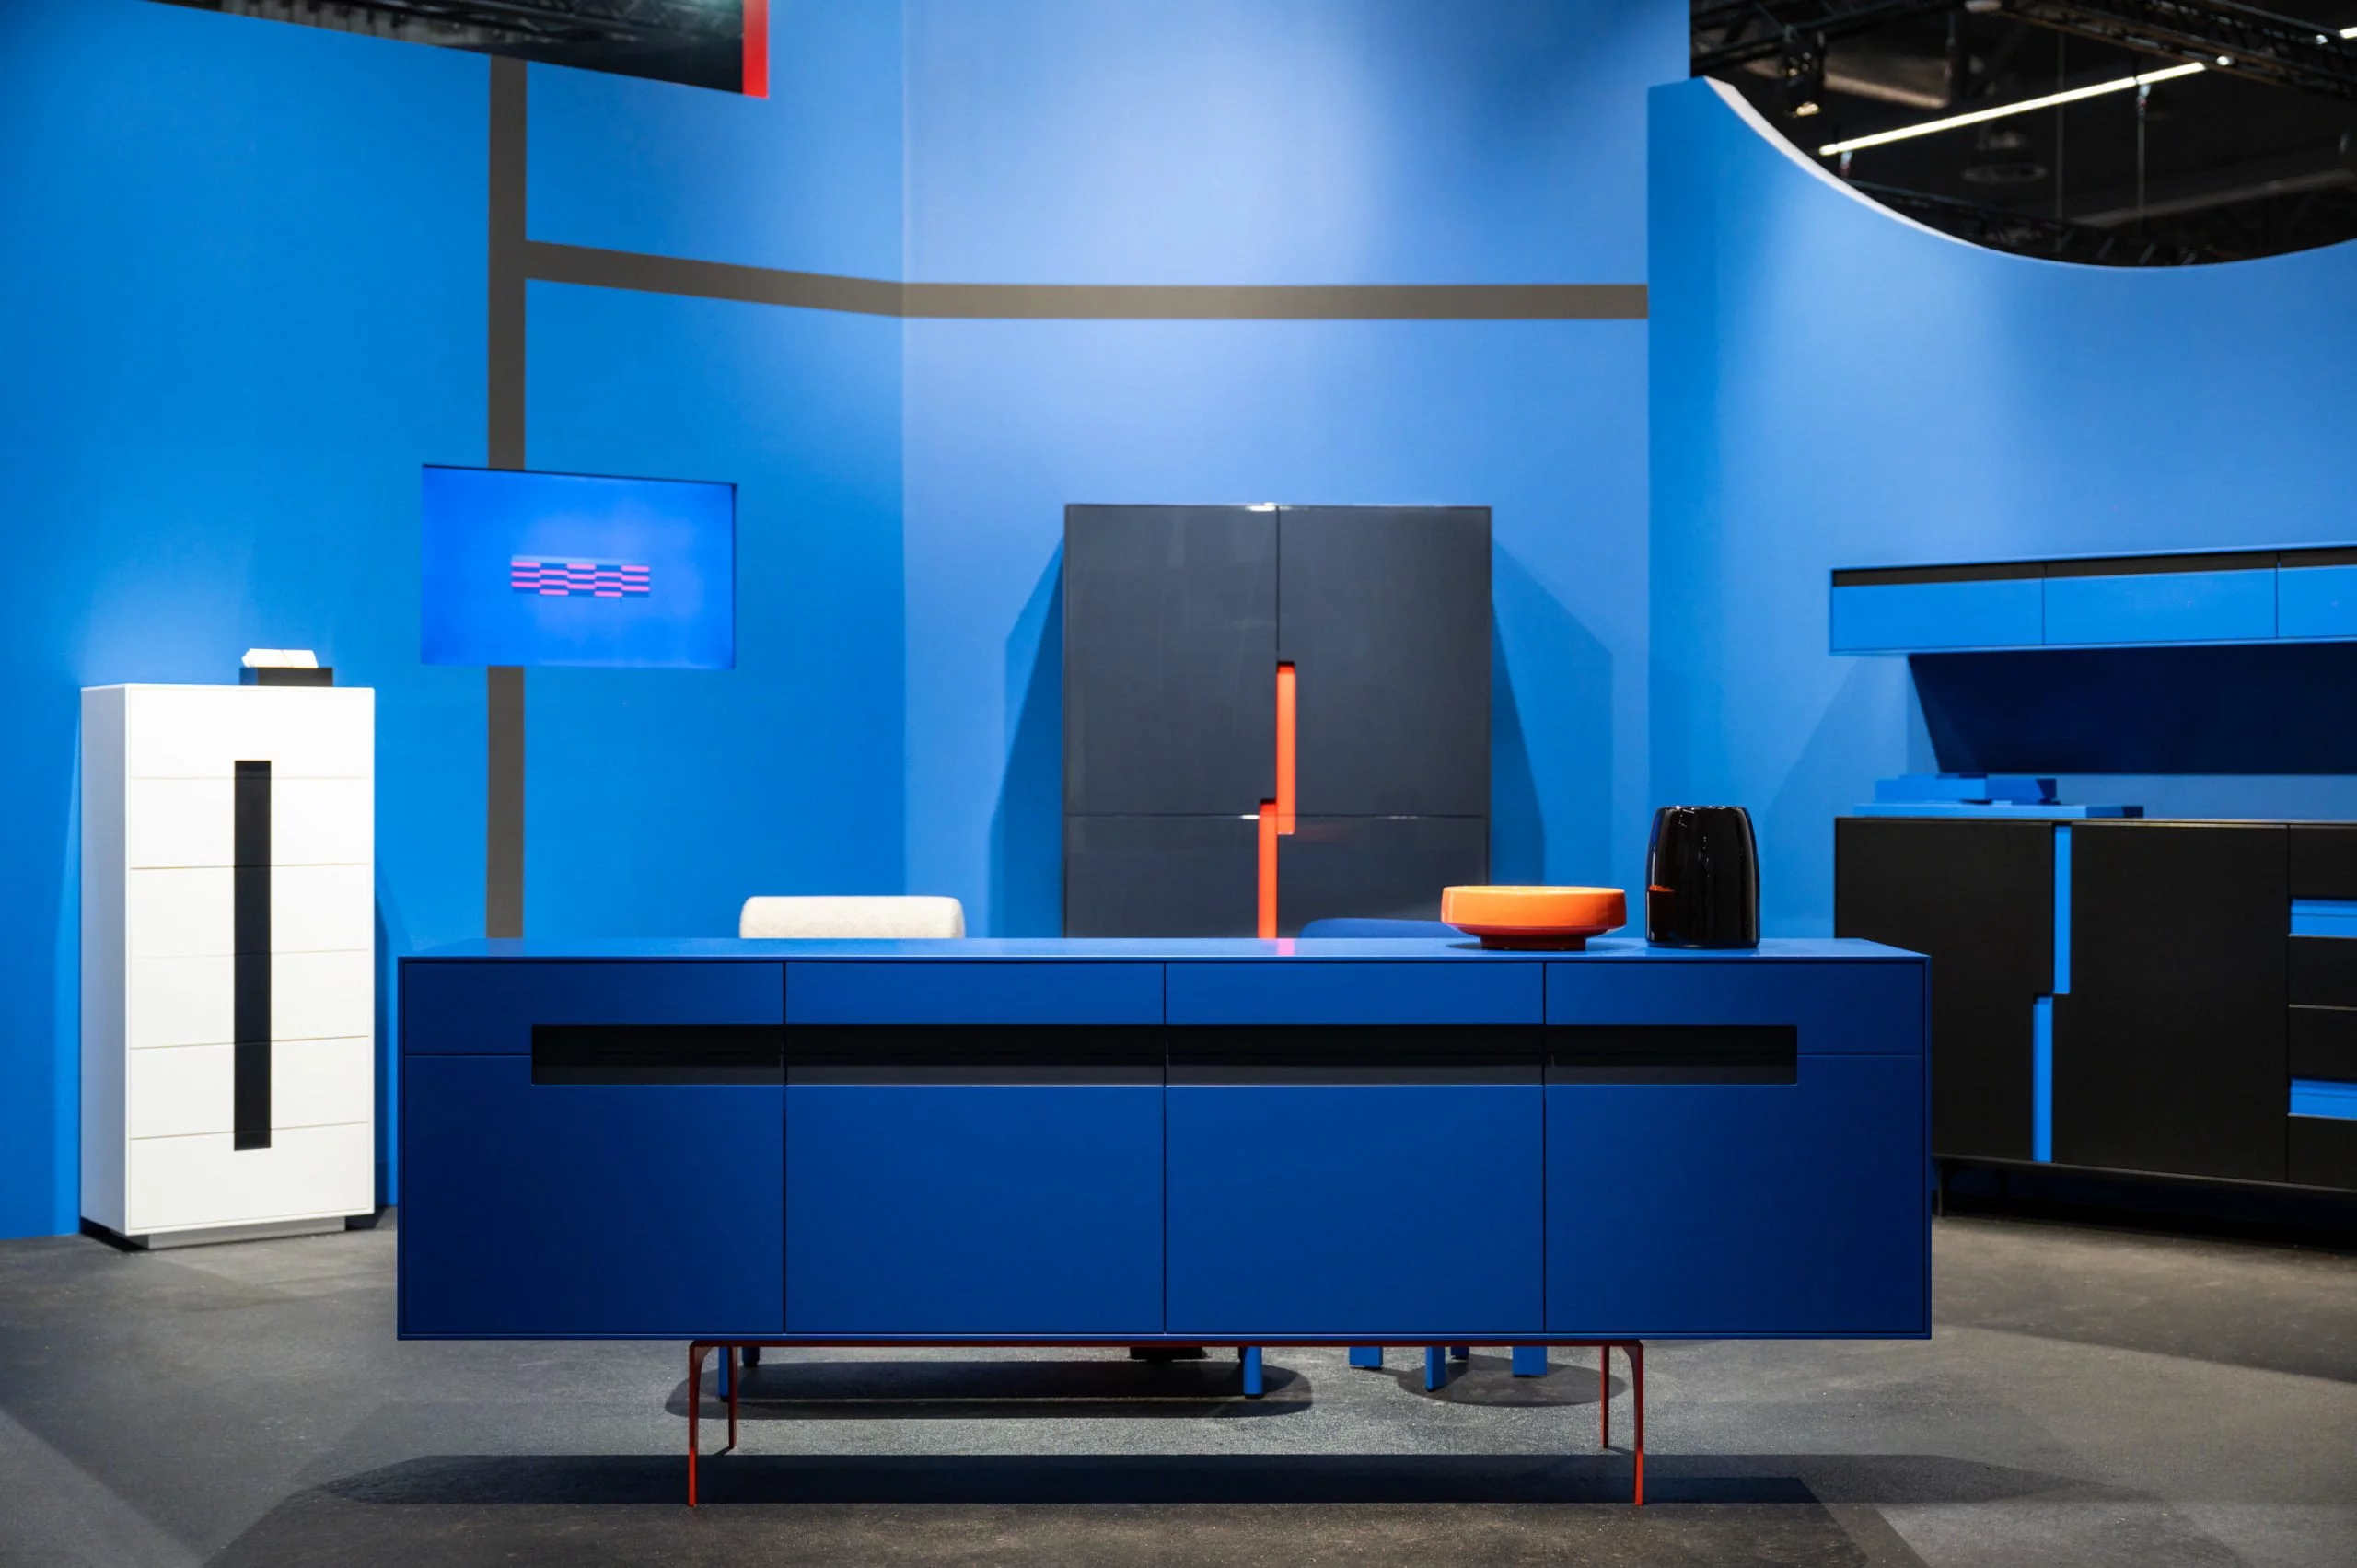 Ein stilvoller Messestand von Schönbuch auf der imm cologne Messe, präsentiert Möbel-Design in ansprechenden Farben, fotografiert von einem renommierten Fotografen aus Düsseldorf. Die Farben Blau und Orange dominieren.